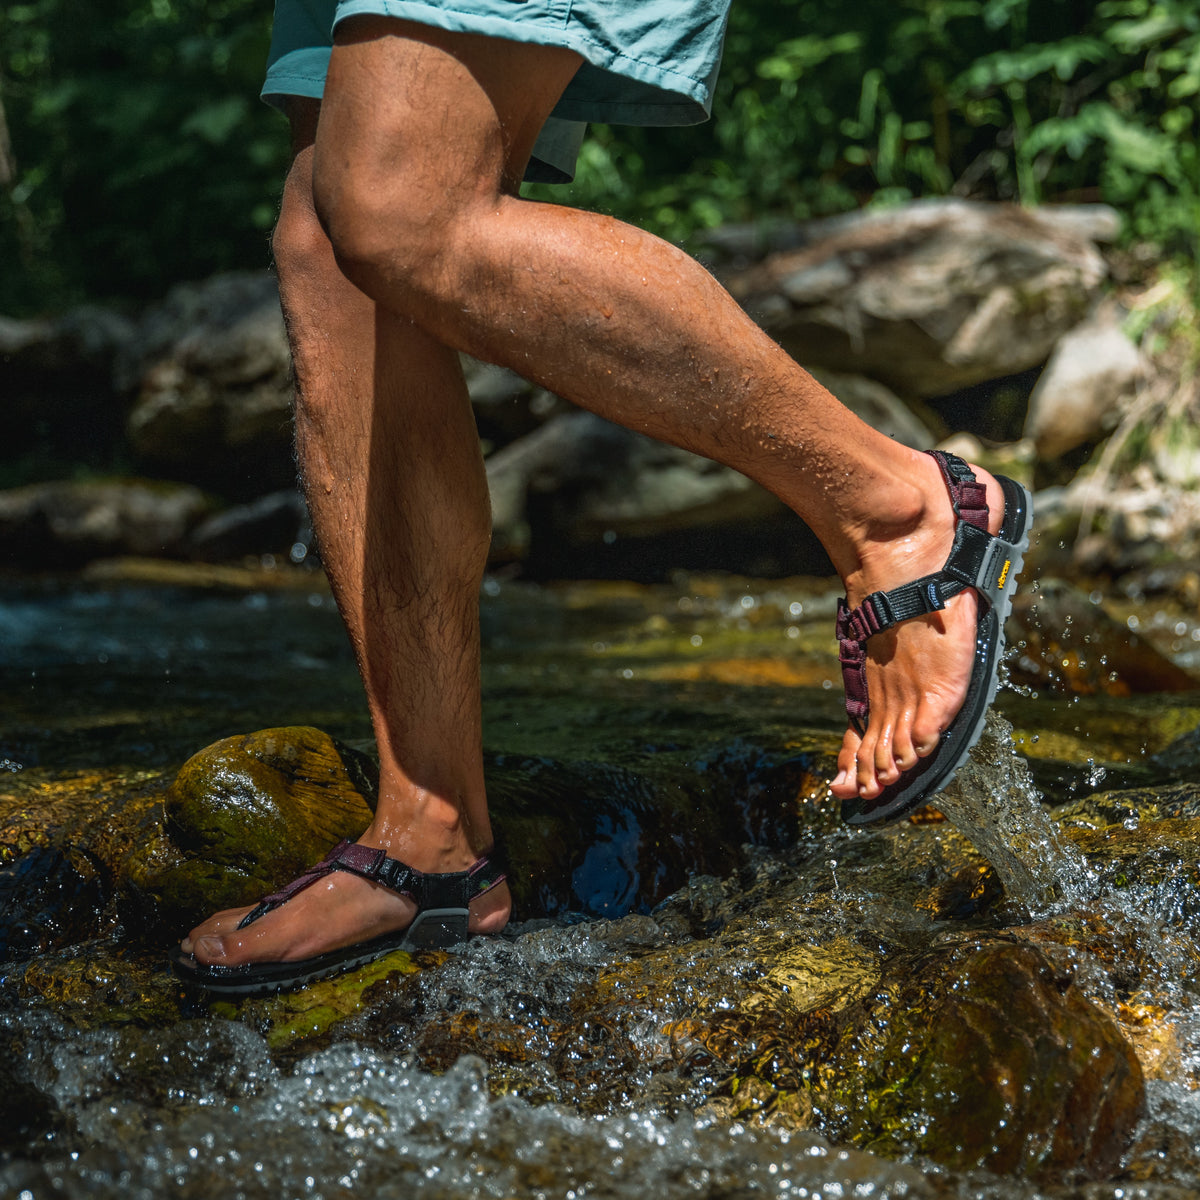 Bedrock Sandals®: Footwear Built your Outdoor Soul